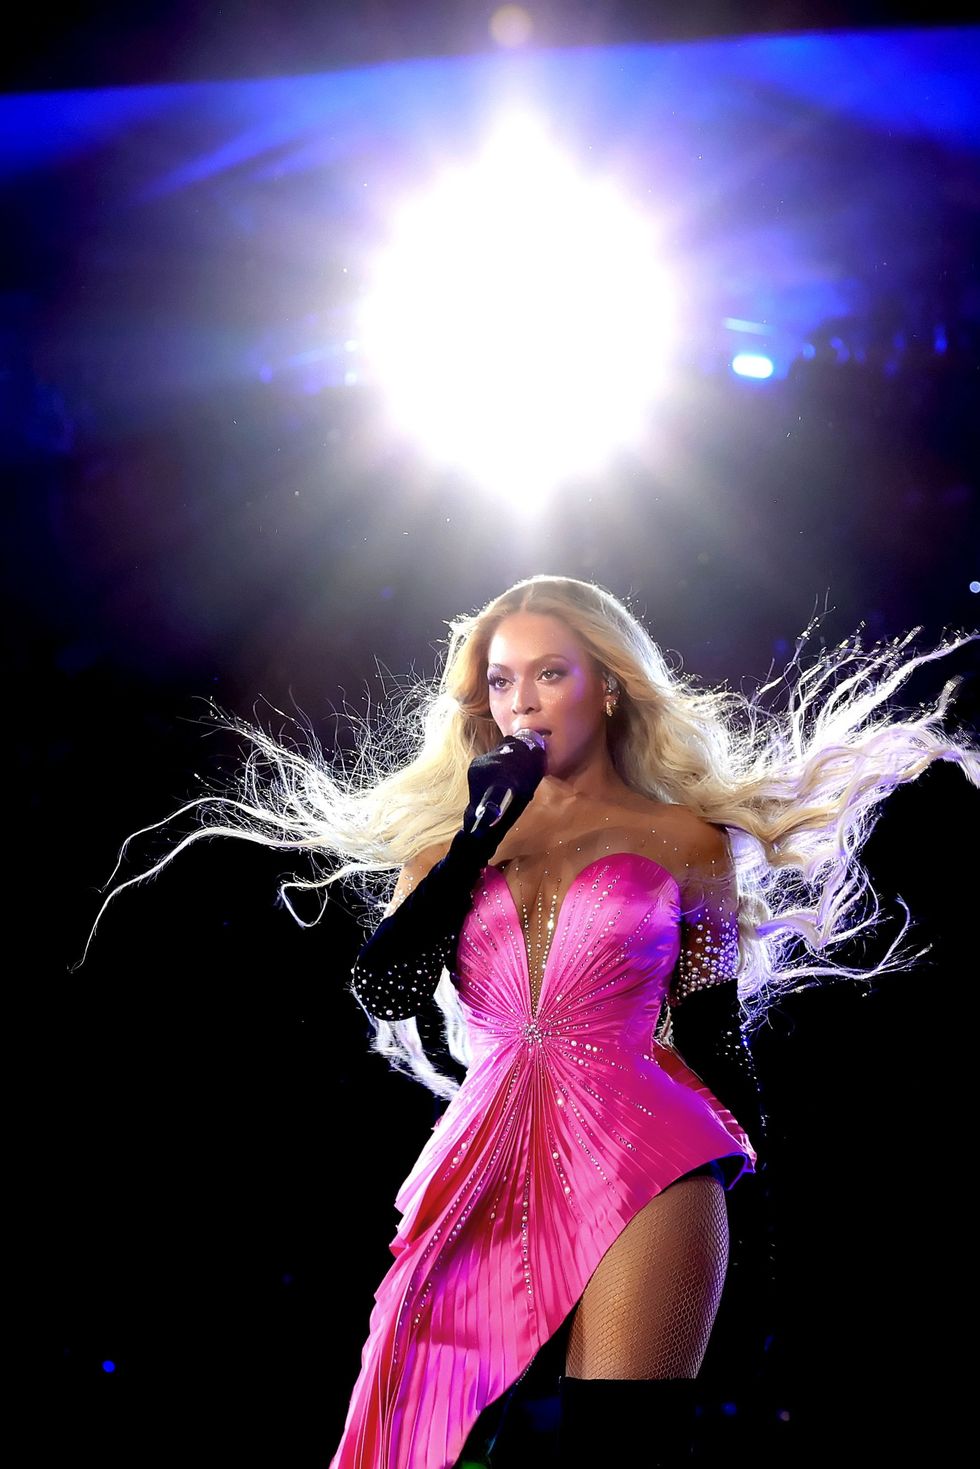 Beyoncé's Renaissance world tour wardrobe